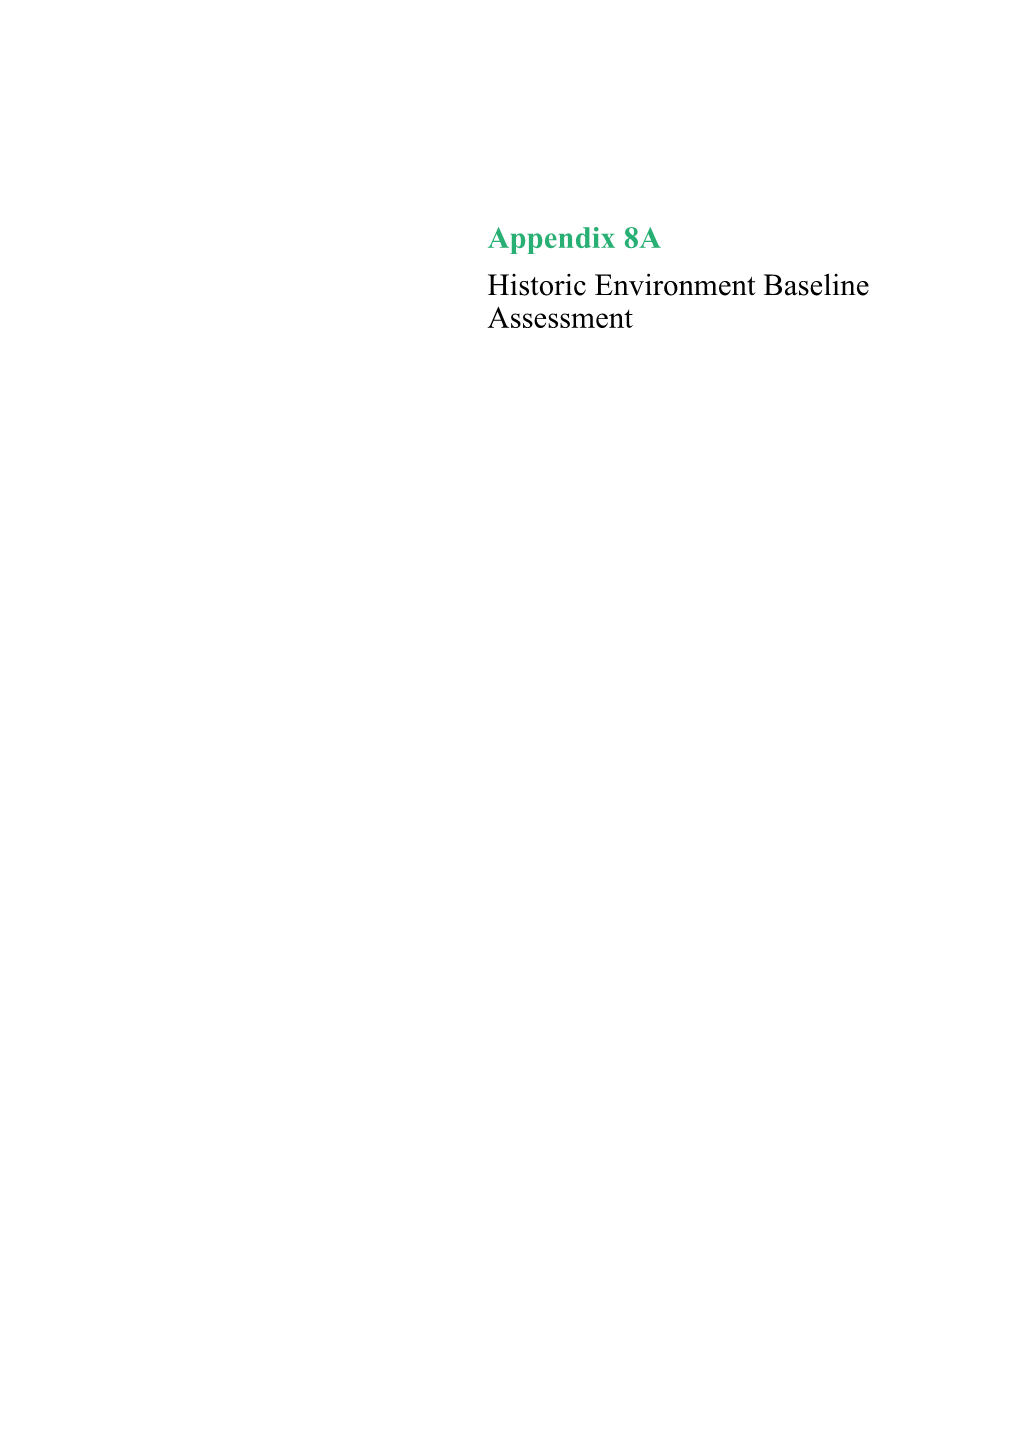 Appendix 8A Historic Environment Baseline Assessment